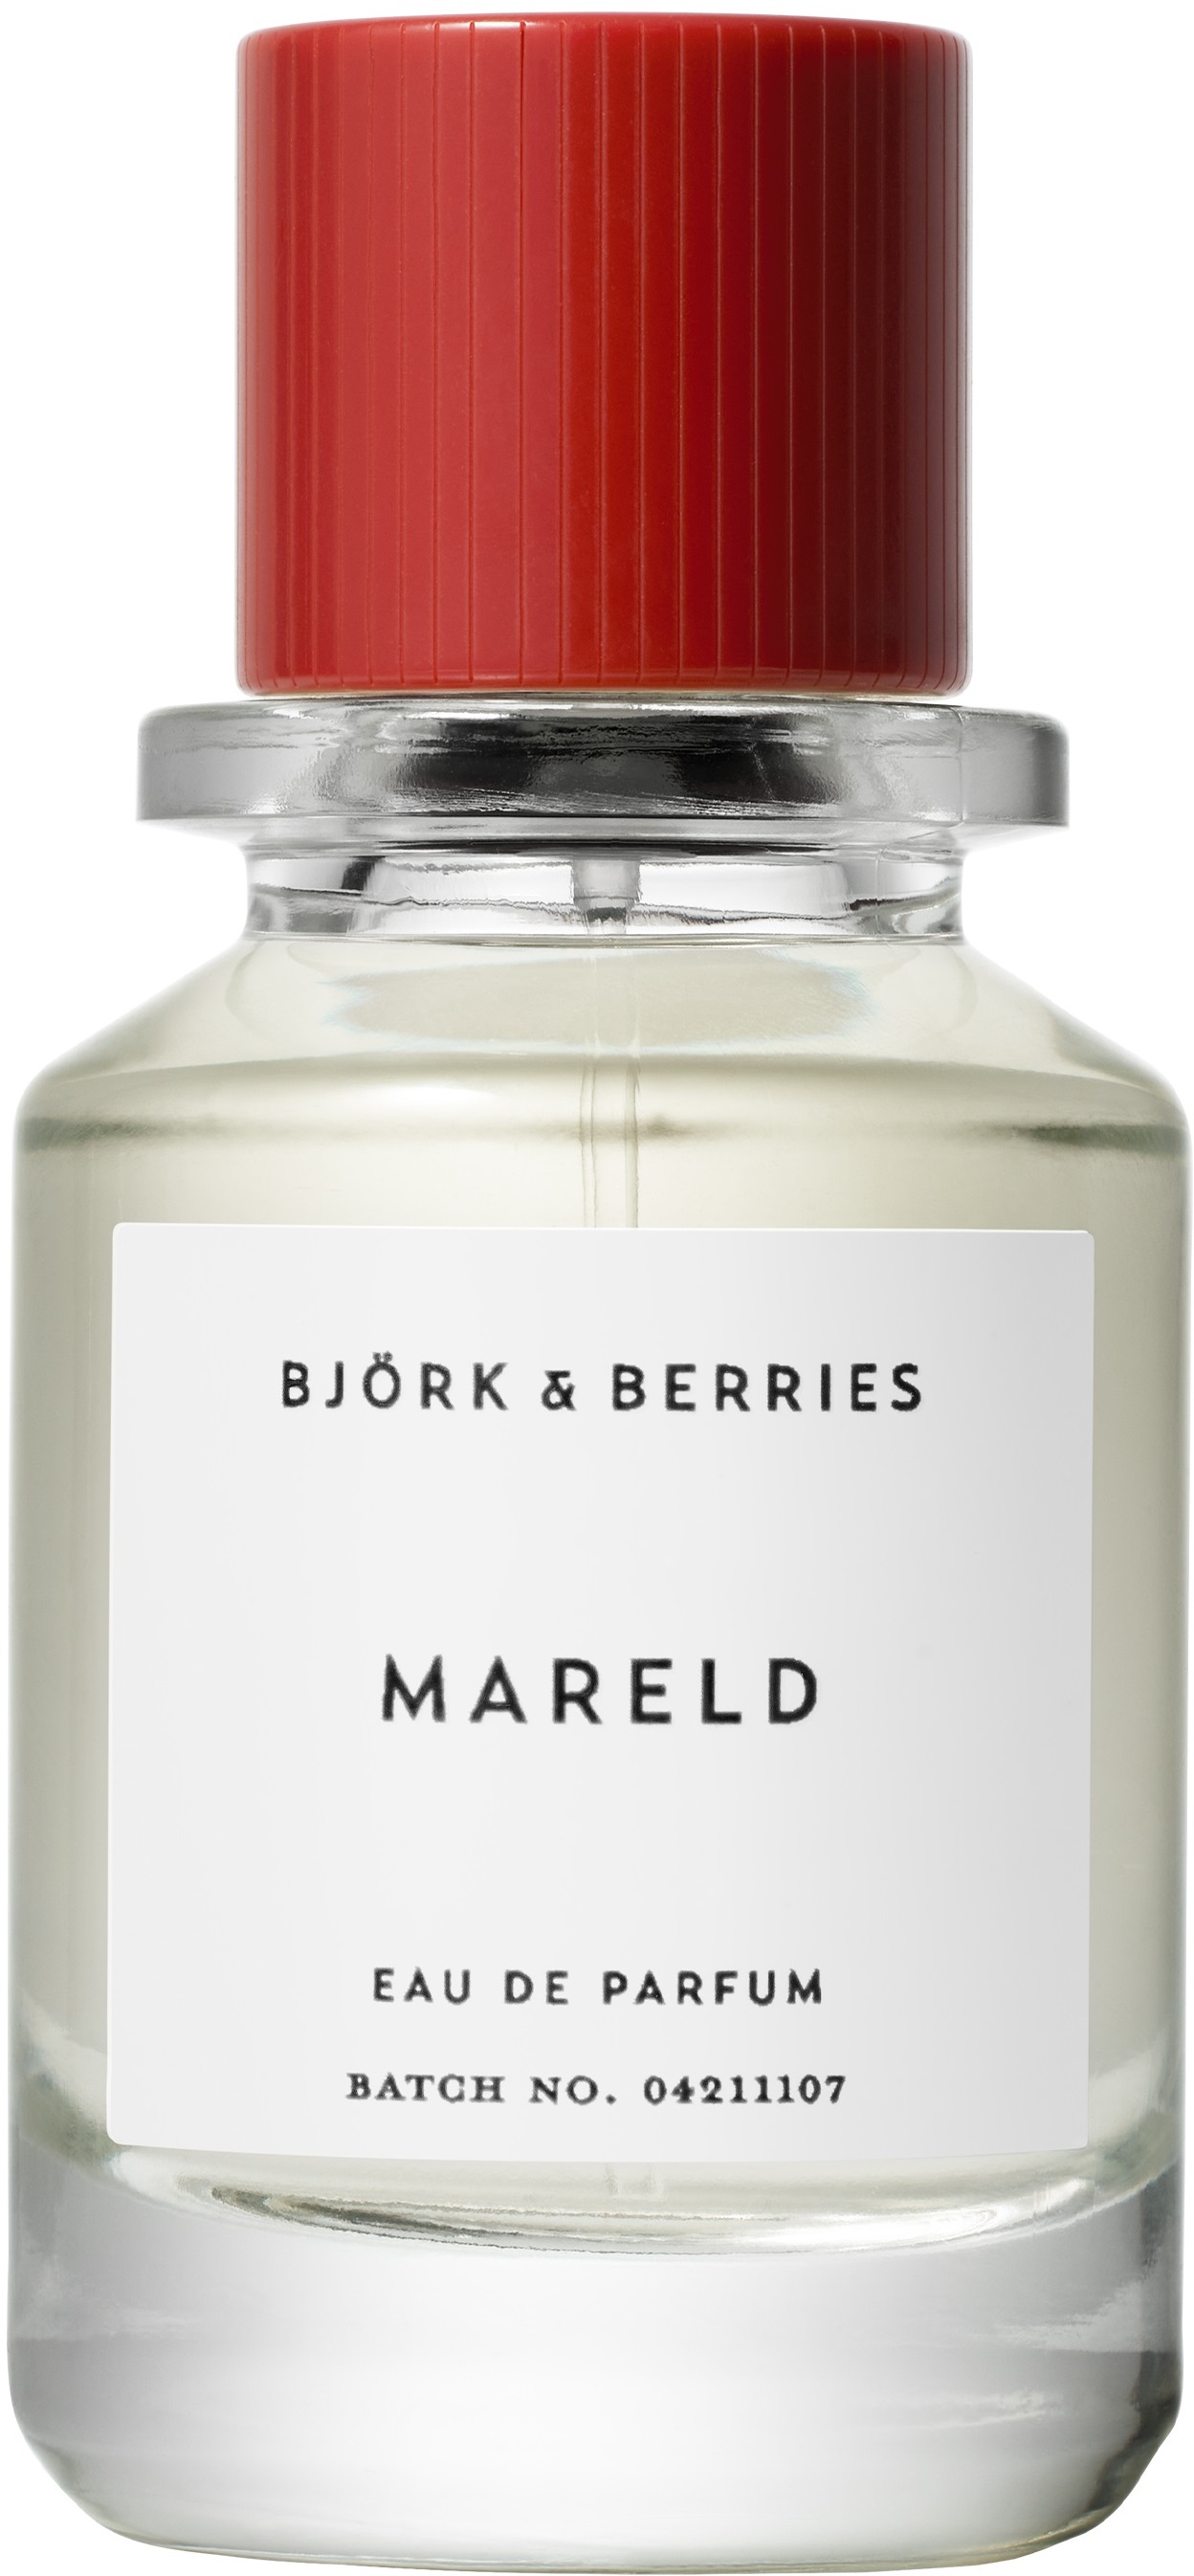 bjork & berries mareld